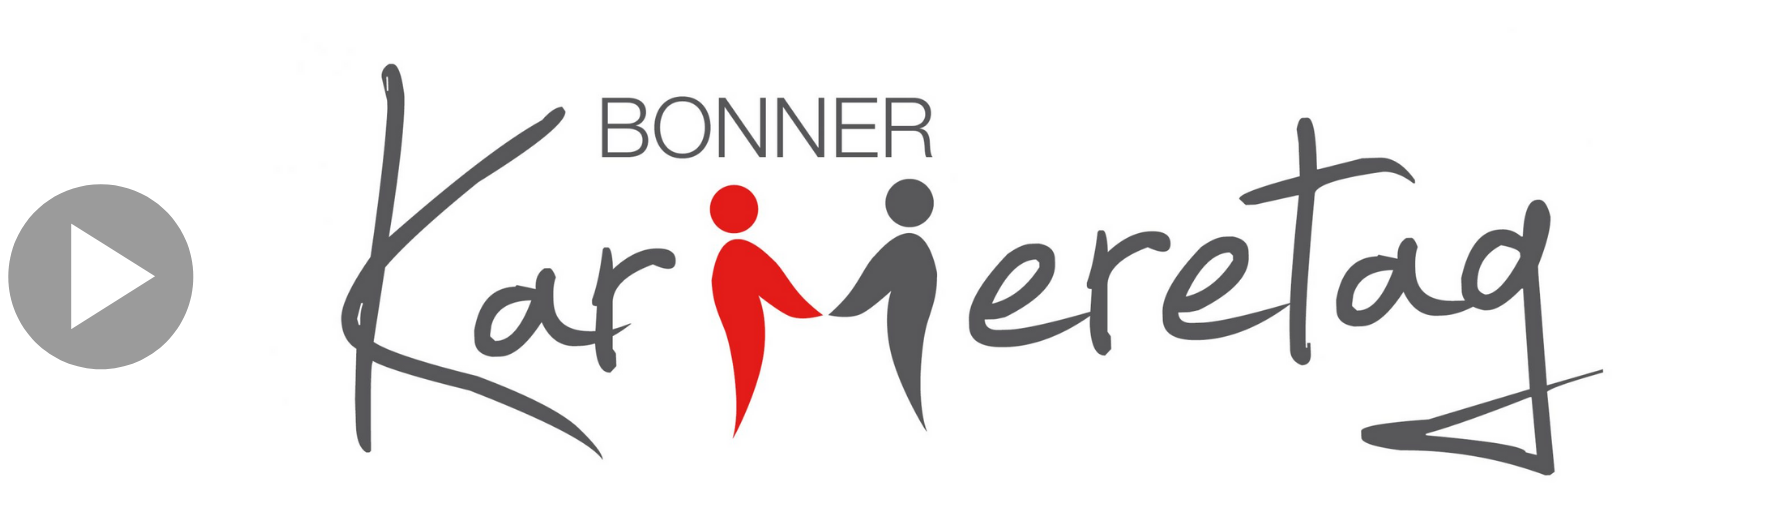 Video-Icon-Bonner-Karrieretag